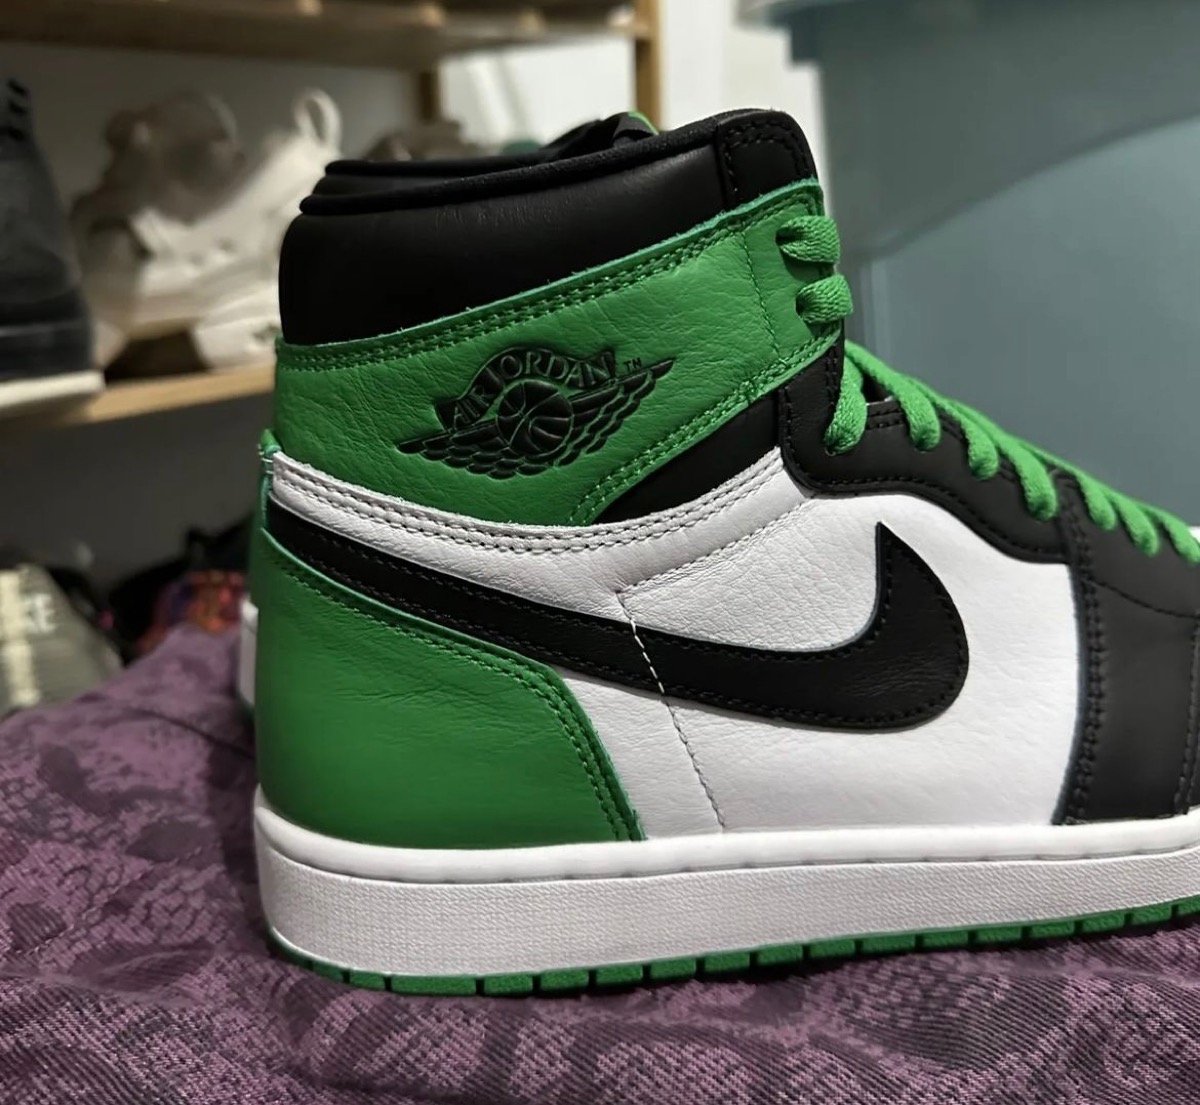 Nike Air Jordan 1 Retro High OG "Celtics